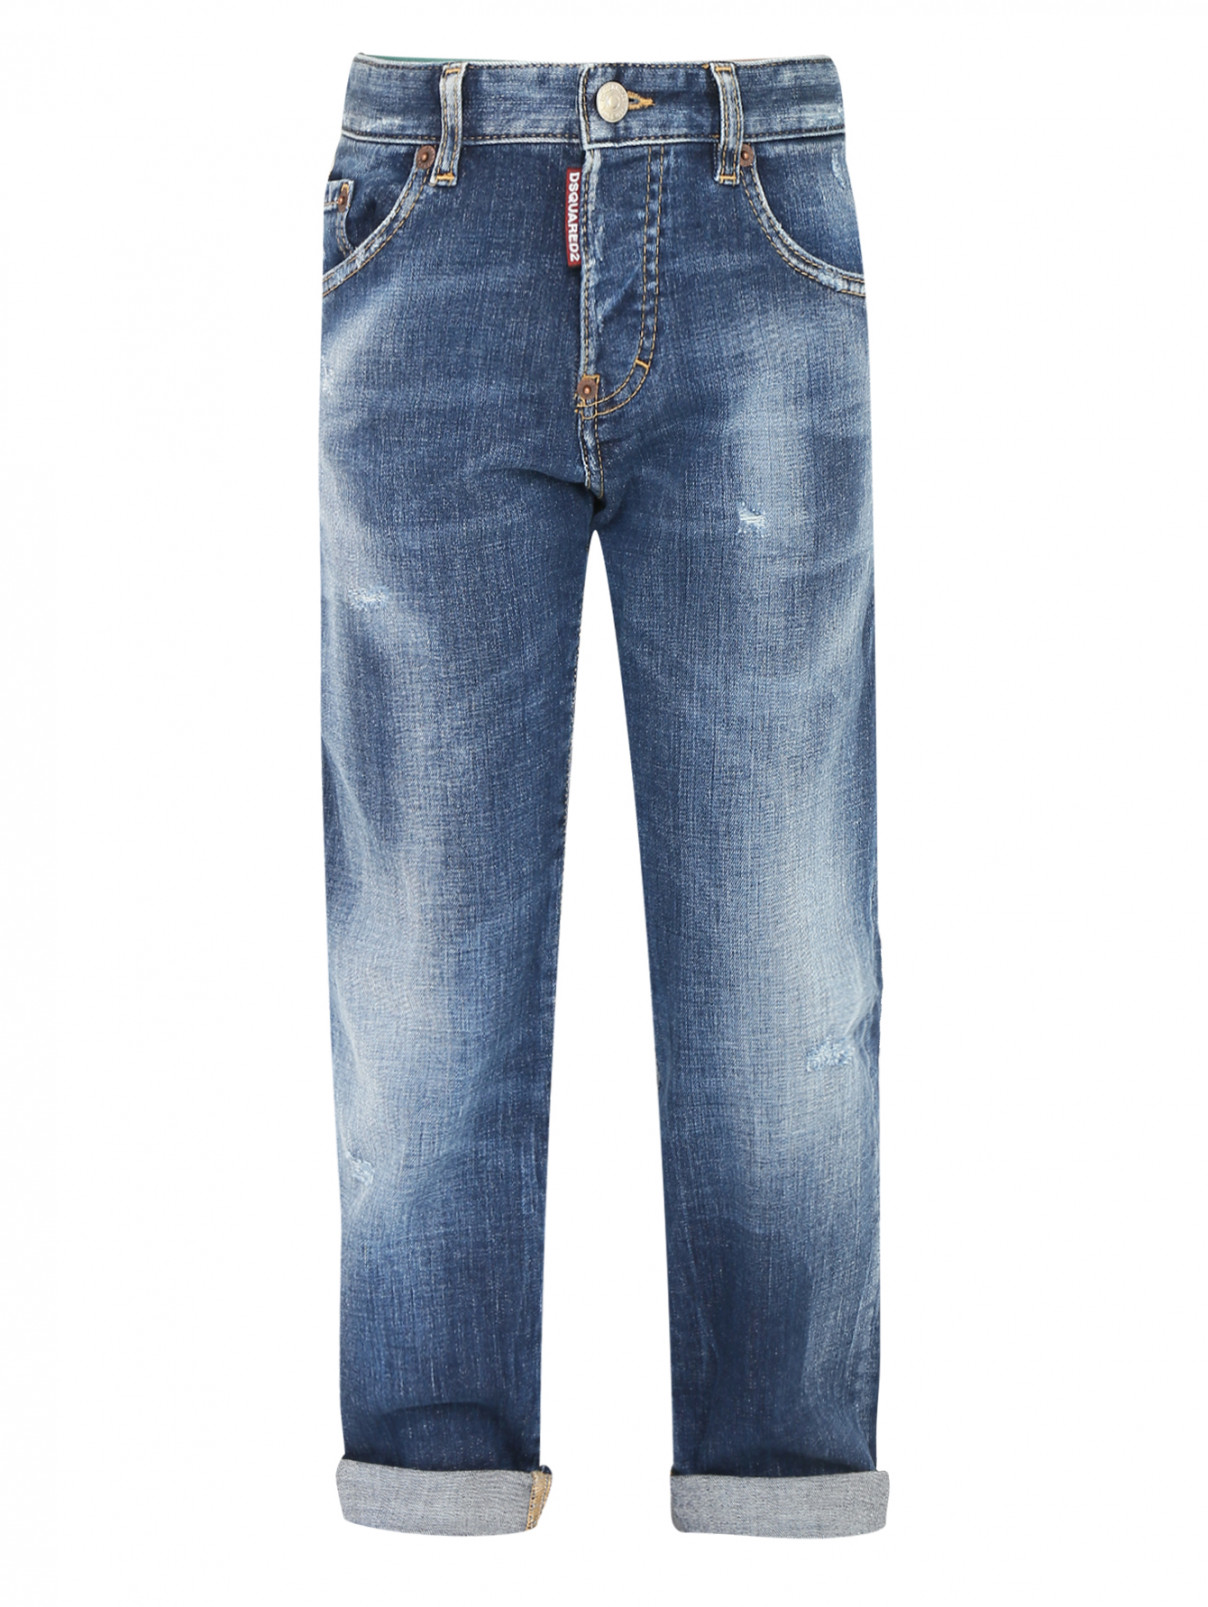 Прямые джинсы с надрезами Dsquared2  –  Общий вид  – Цвет:  Синий